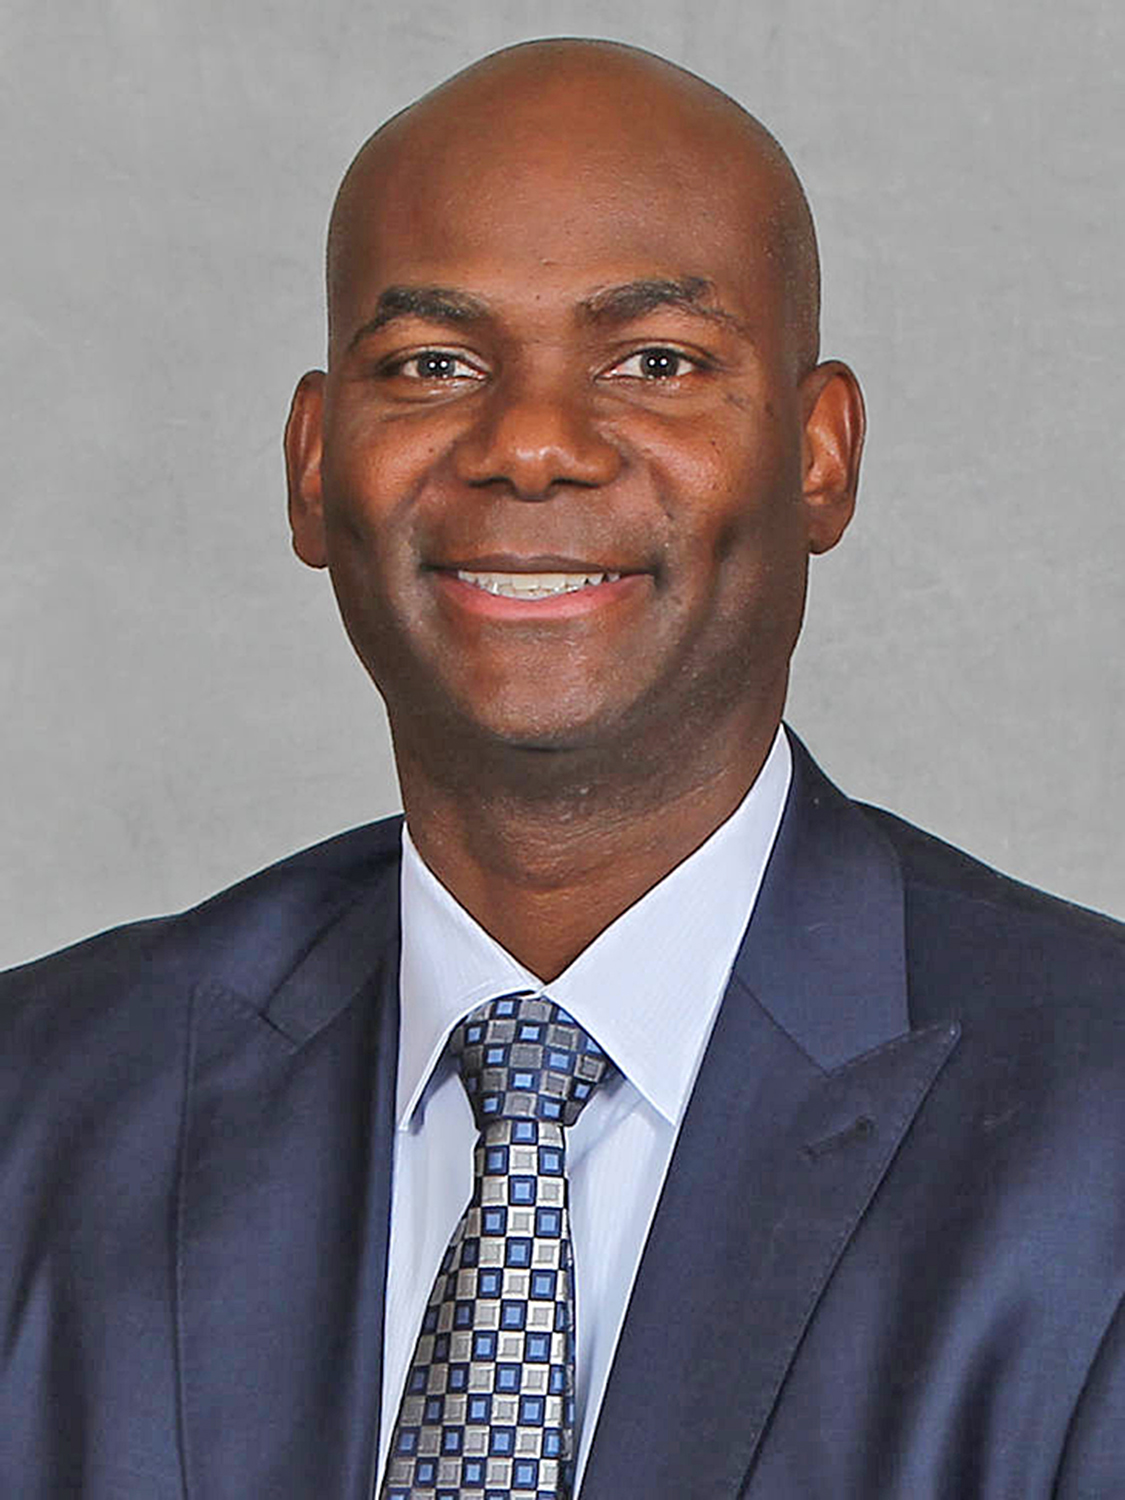 UGA assistant men's basketball coach David Carter